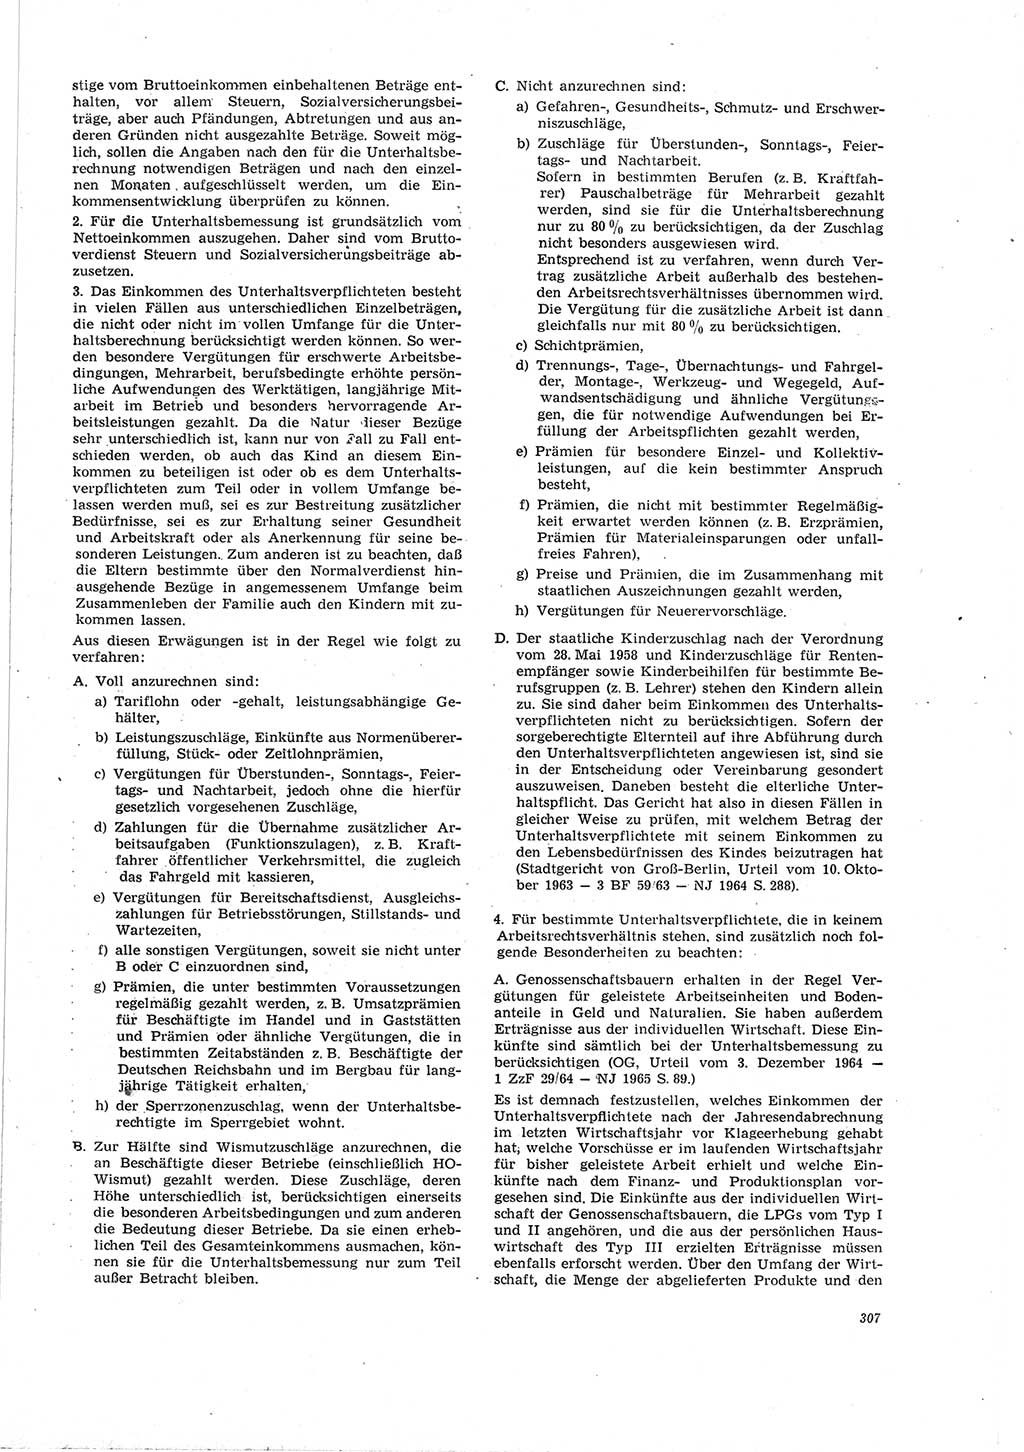 Neue Justiz (NJ), Zeitschrift für Recht und Rechtswissenschaft [Deutsche Demokratische Republik (DDR)], 19. Jahrgang 1965, Seite 307 (NJ DDR 1965, S. 307)